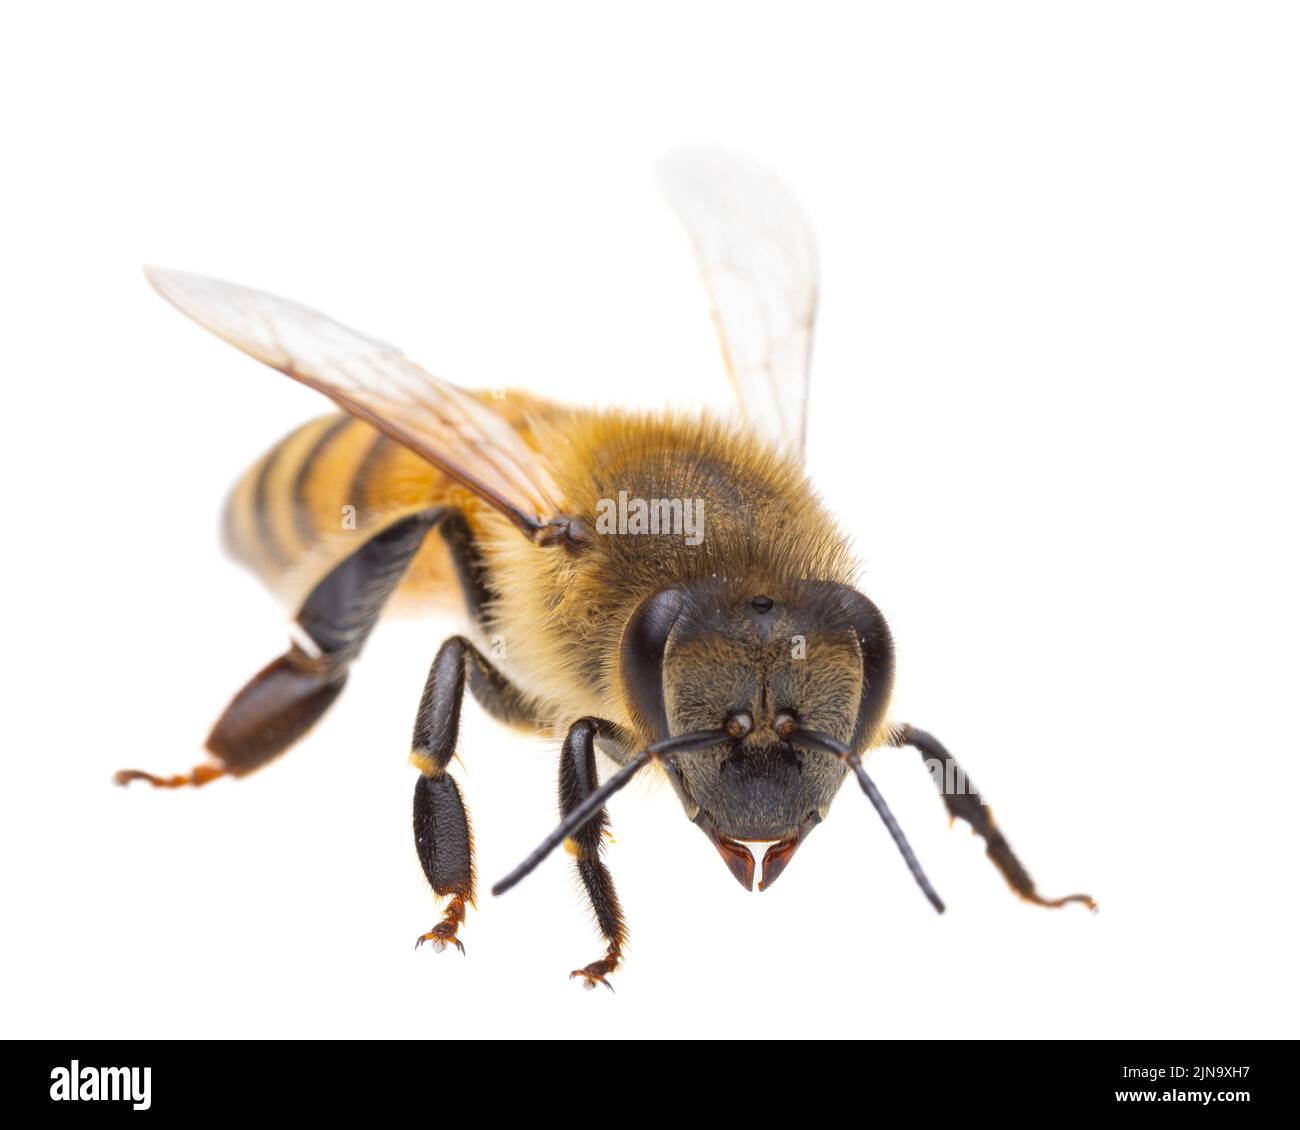 Insetti d'europa - api: Vista laterale macro di api mellifera europee ( Apis mellifera) isolato su sfondo bianco - testa allo spettatore Foto Stock